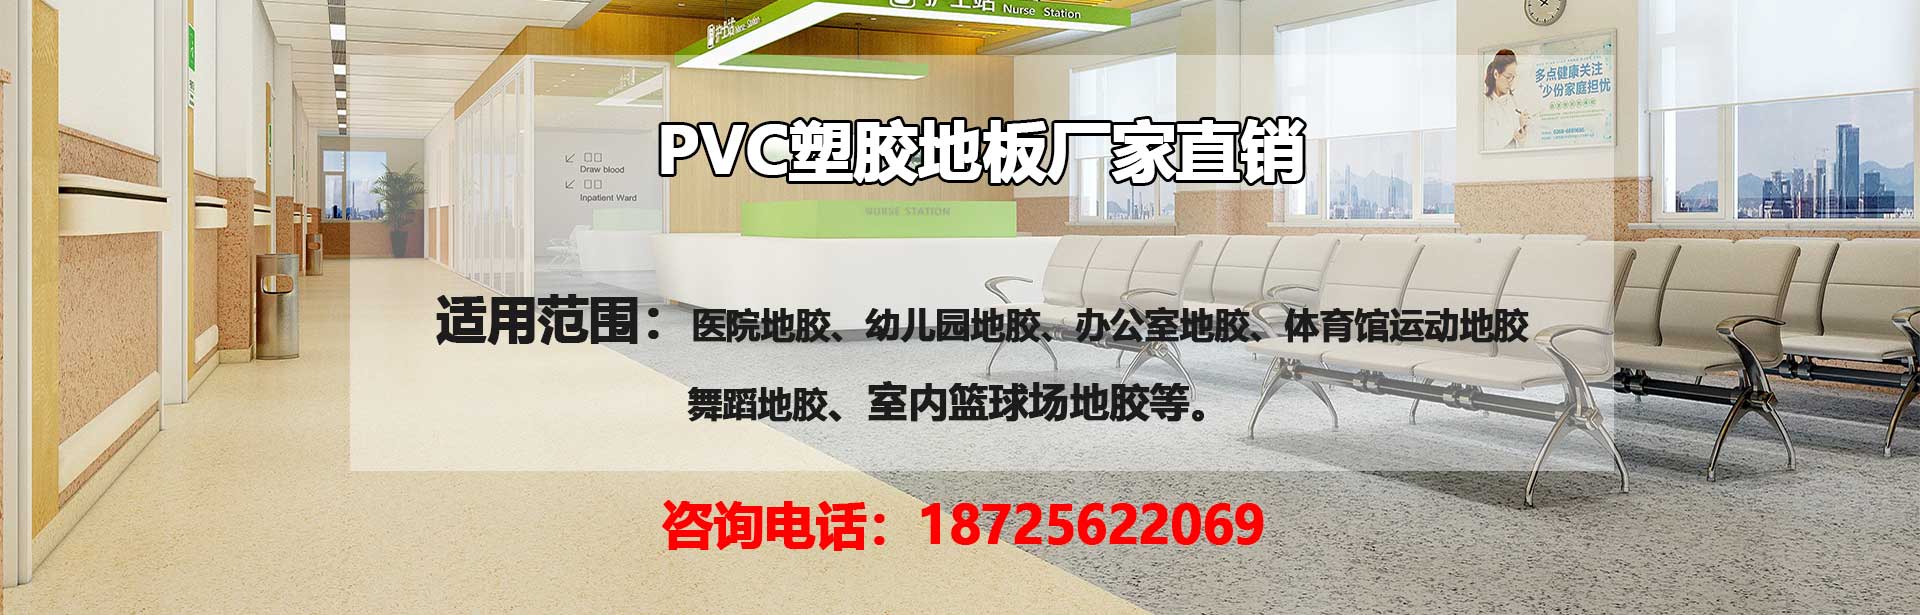 平凉PVC塑胶地板